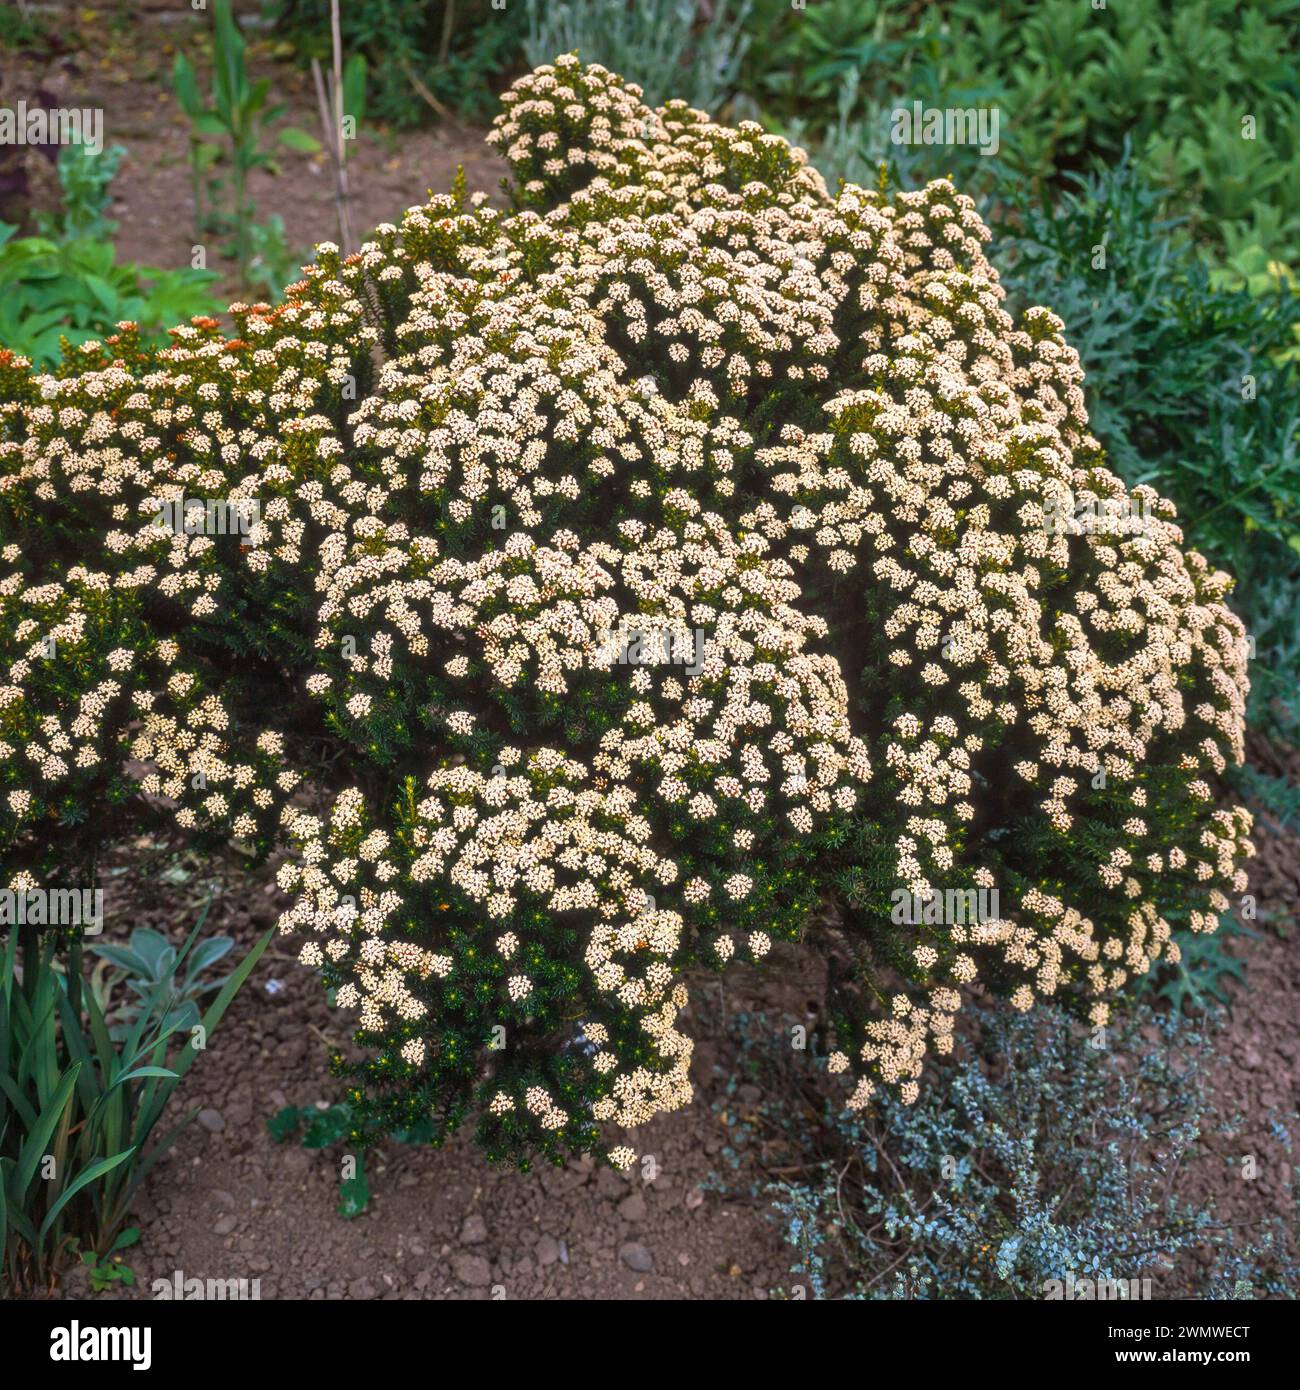 Ozothamnus ledifolius / kerosene weed / kerosene bush / Helichrysum ledifolium shrub covered in blossom flowers growing in English garden, England, UK Stock Photo